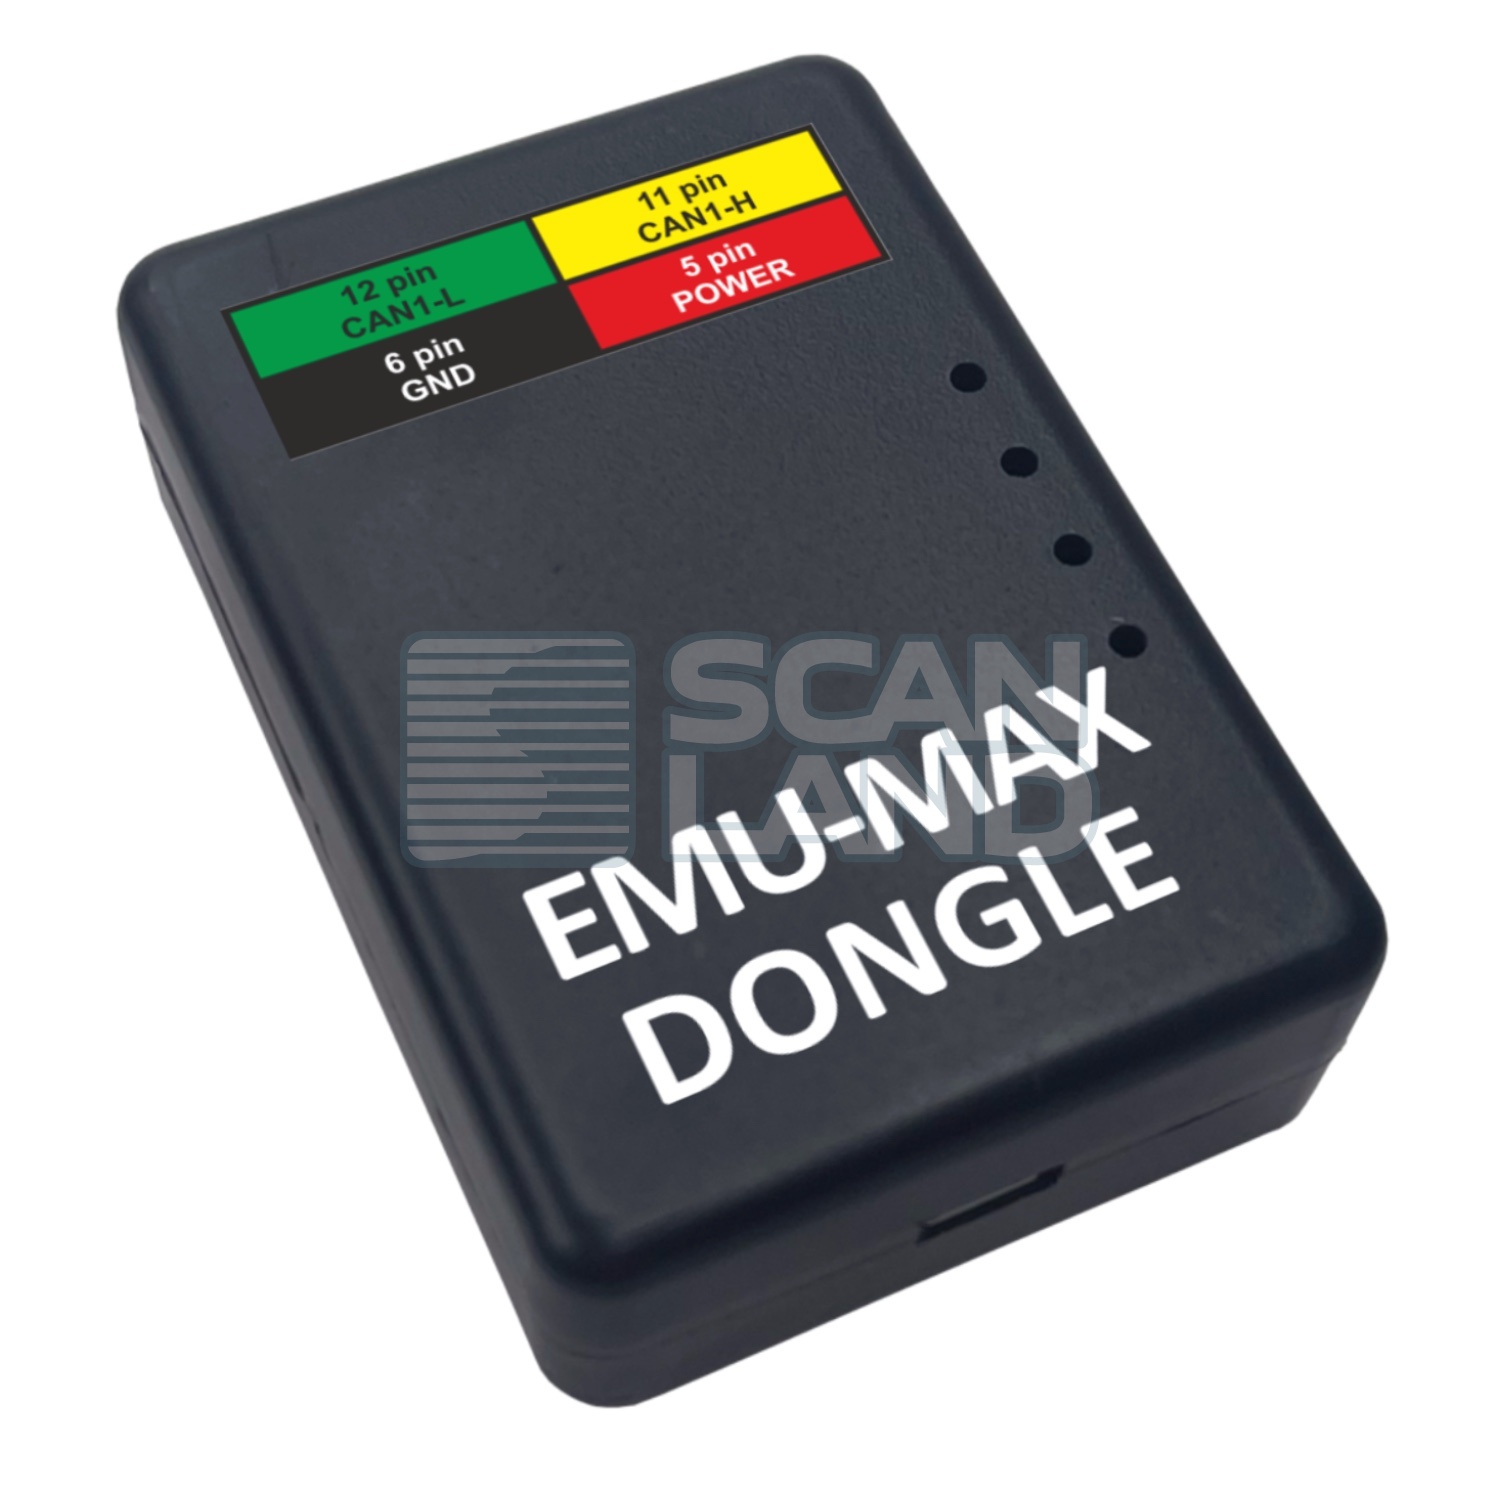 Донгл-ключ для эмуляторов Emu-Max 